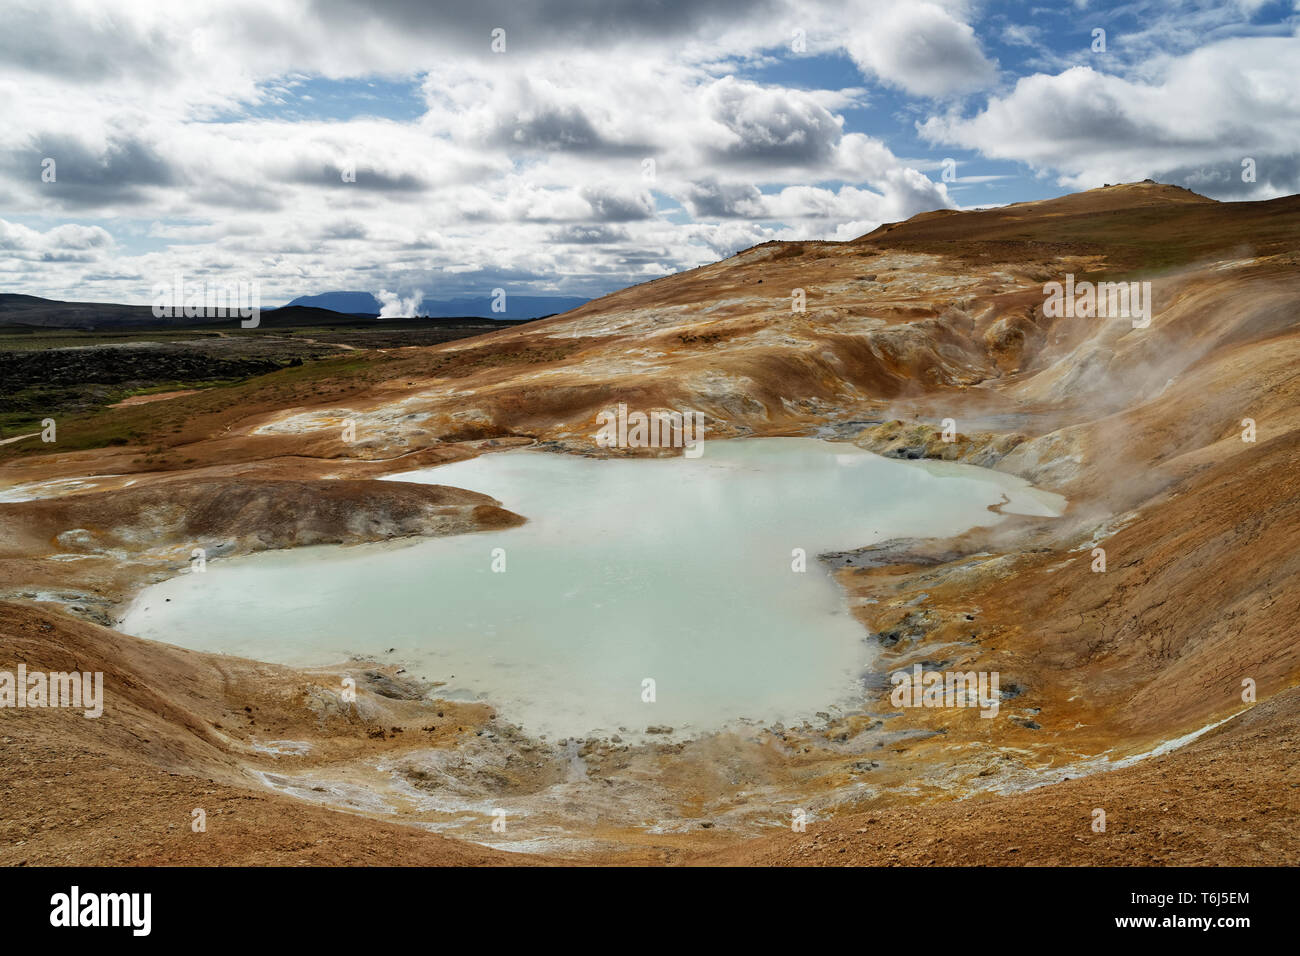 Große vulkanische Landschaft mit Ocker, rote und gelbe Farbtöne im Vordergrund, ein Teich mit Thermalwasser im Vordergrund und Schwefel Quellen gefüllt, Risi Stockfoto